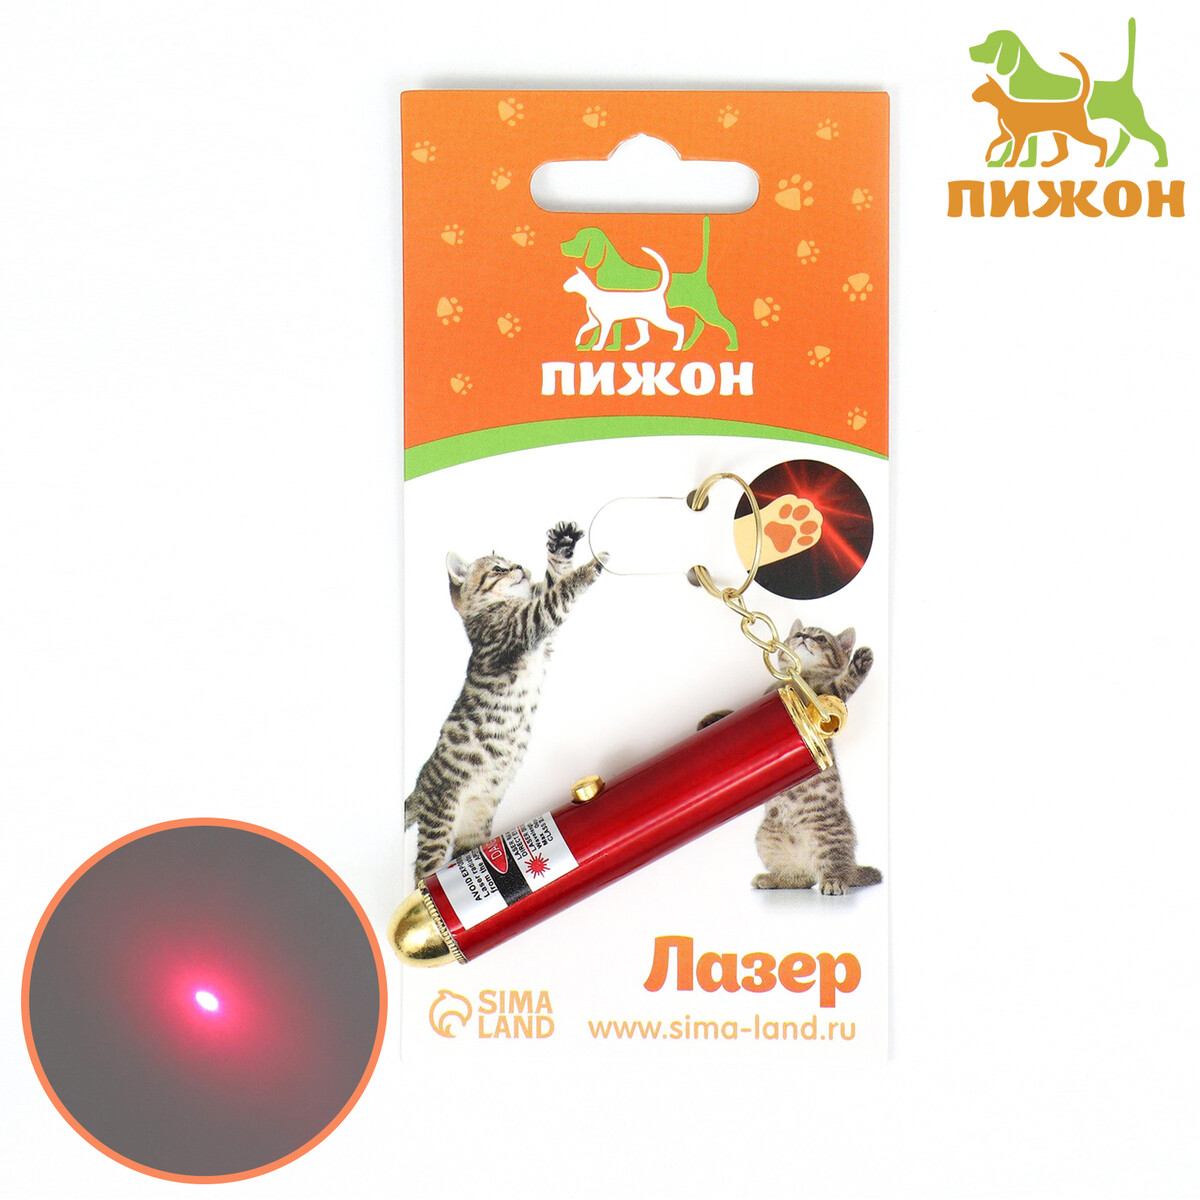 Игрушка для кошек игрушка для кошек лазер